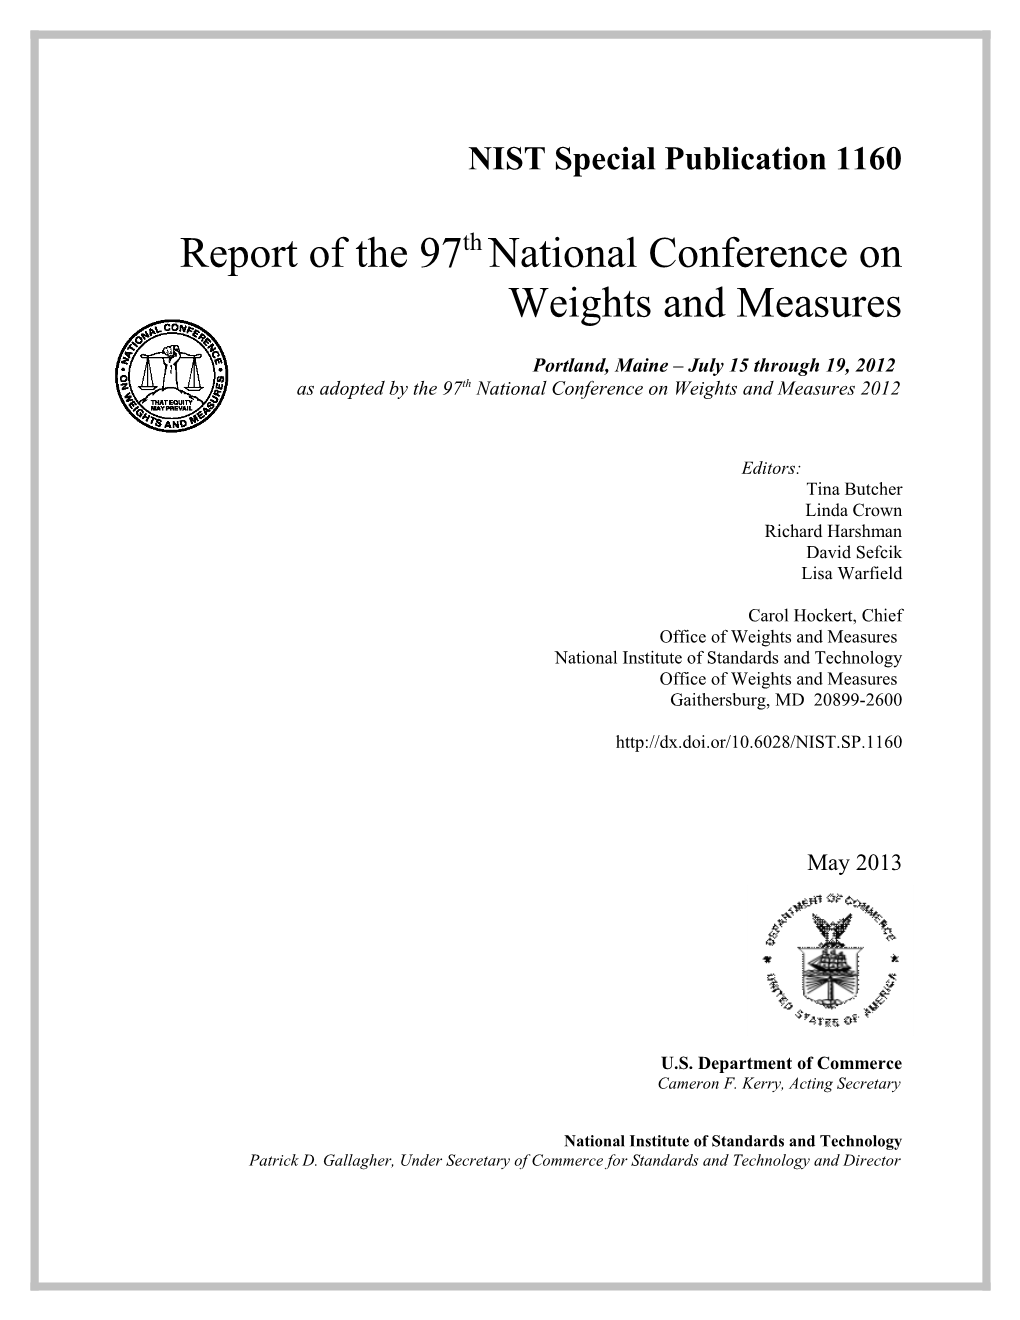 NCWM Annual Report